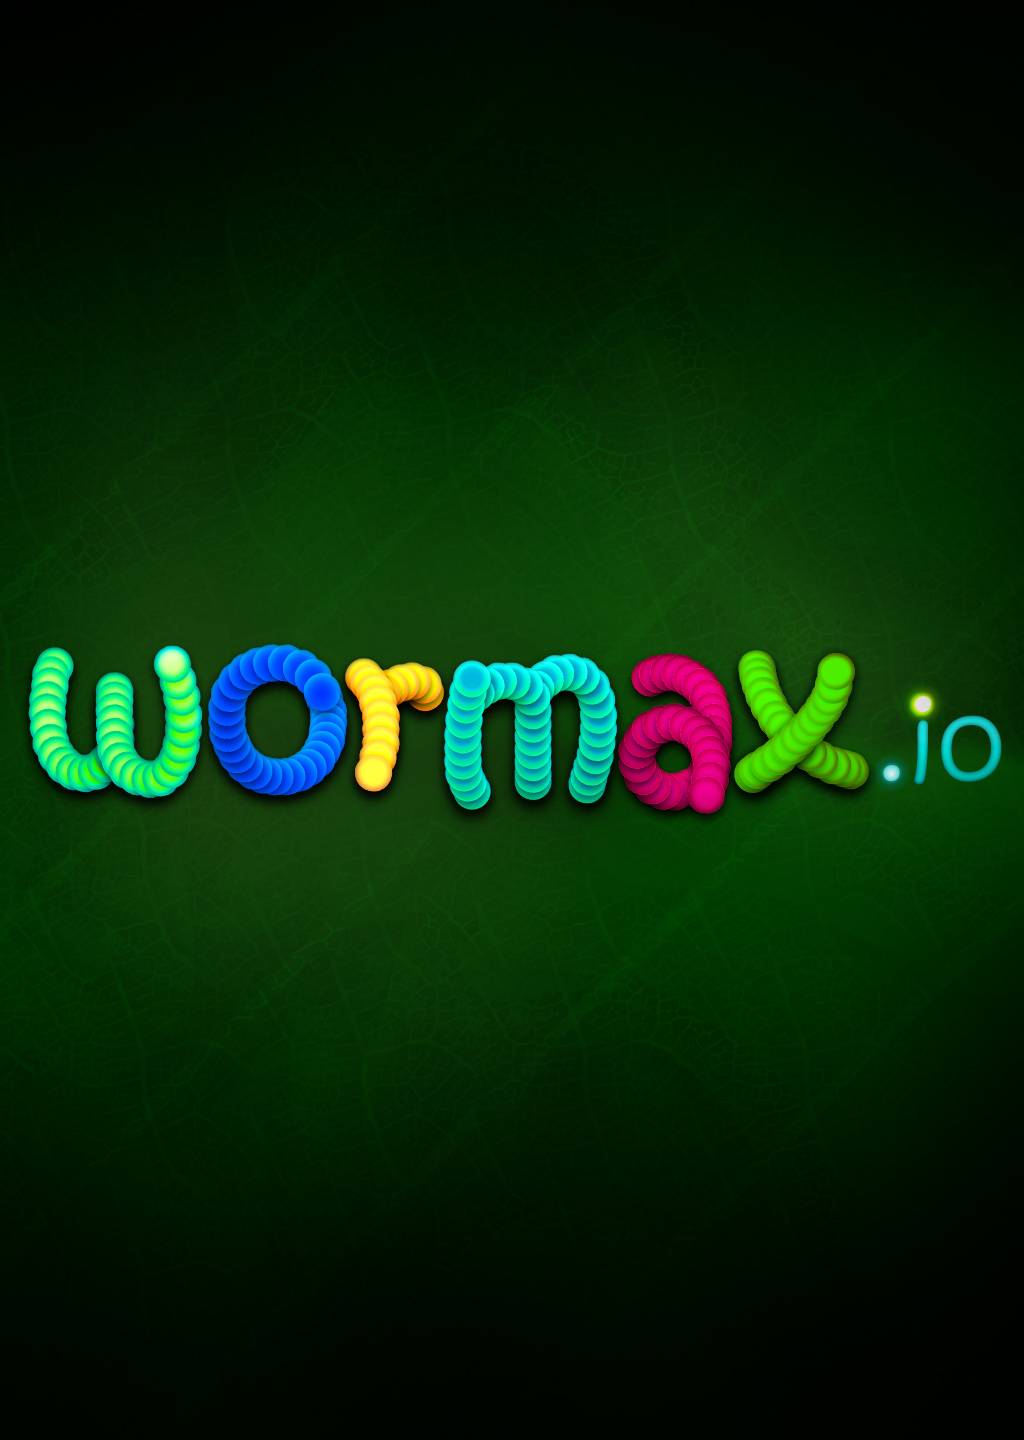 wormax.io